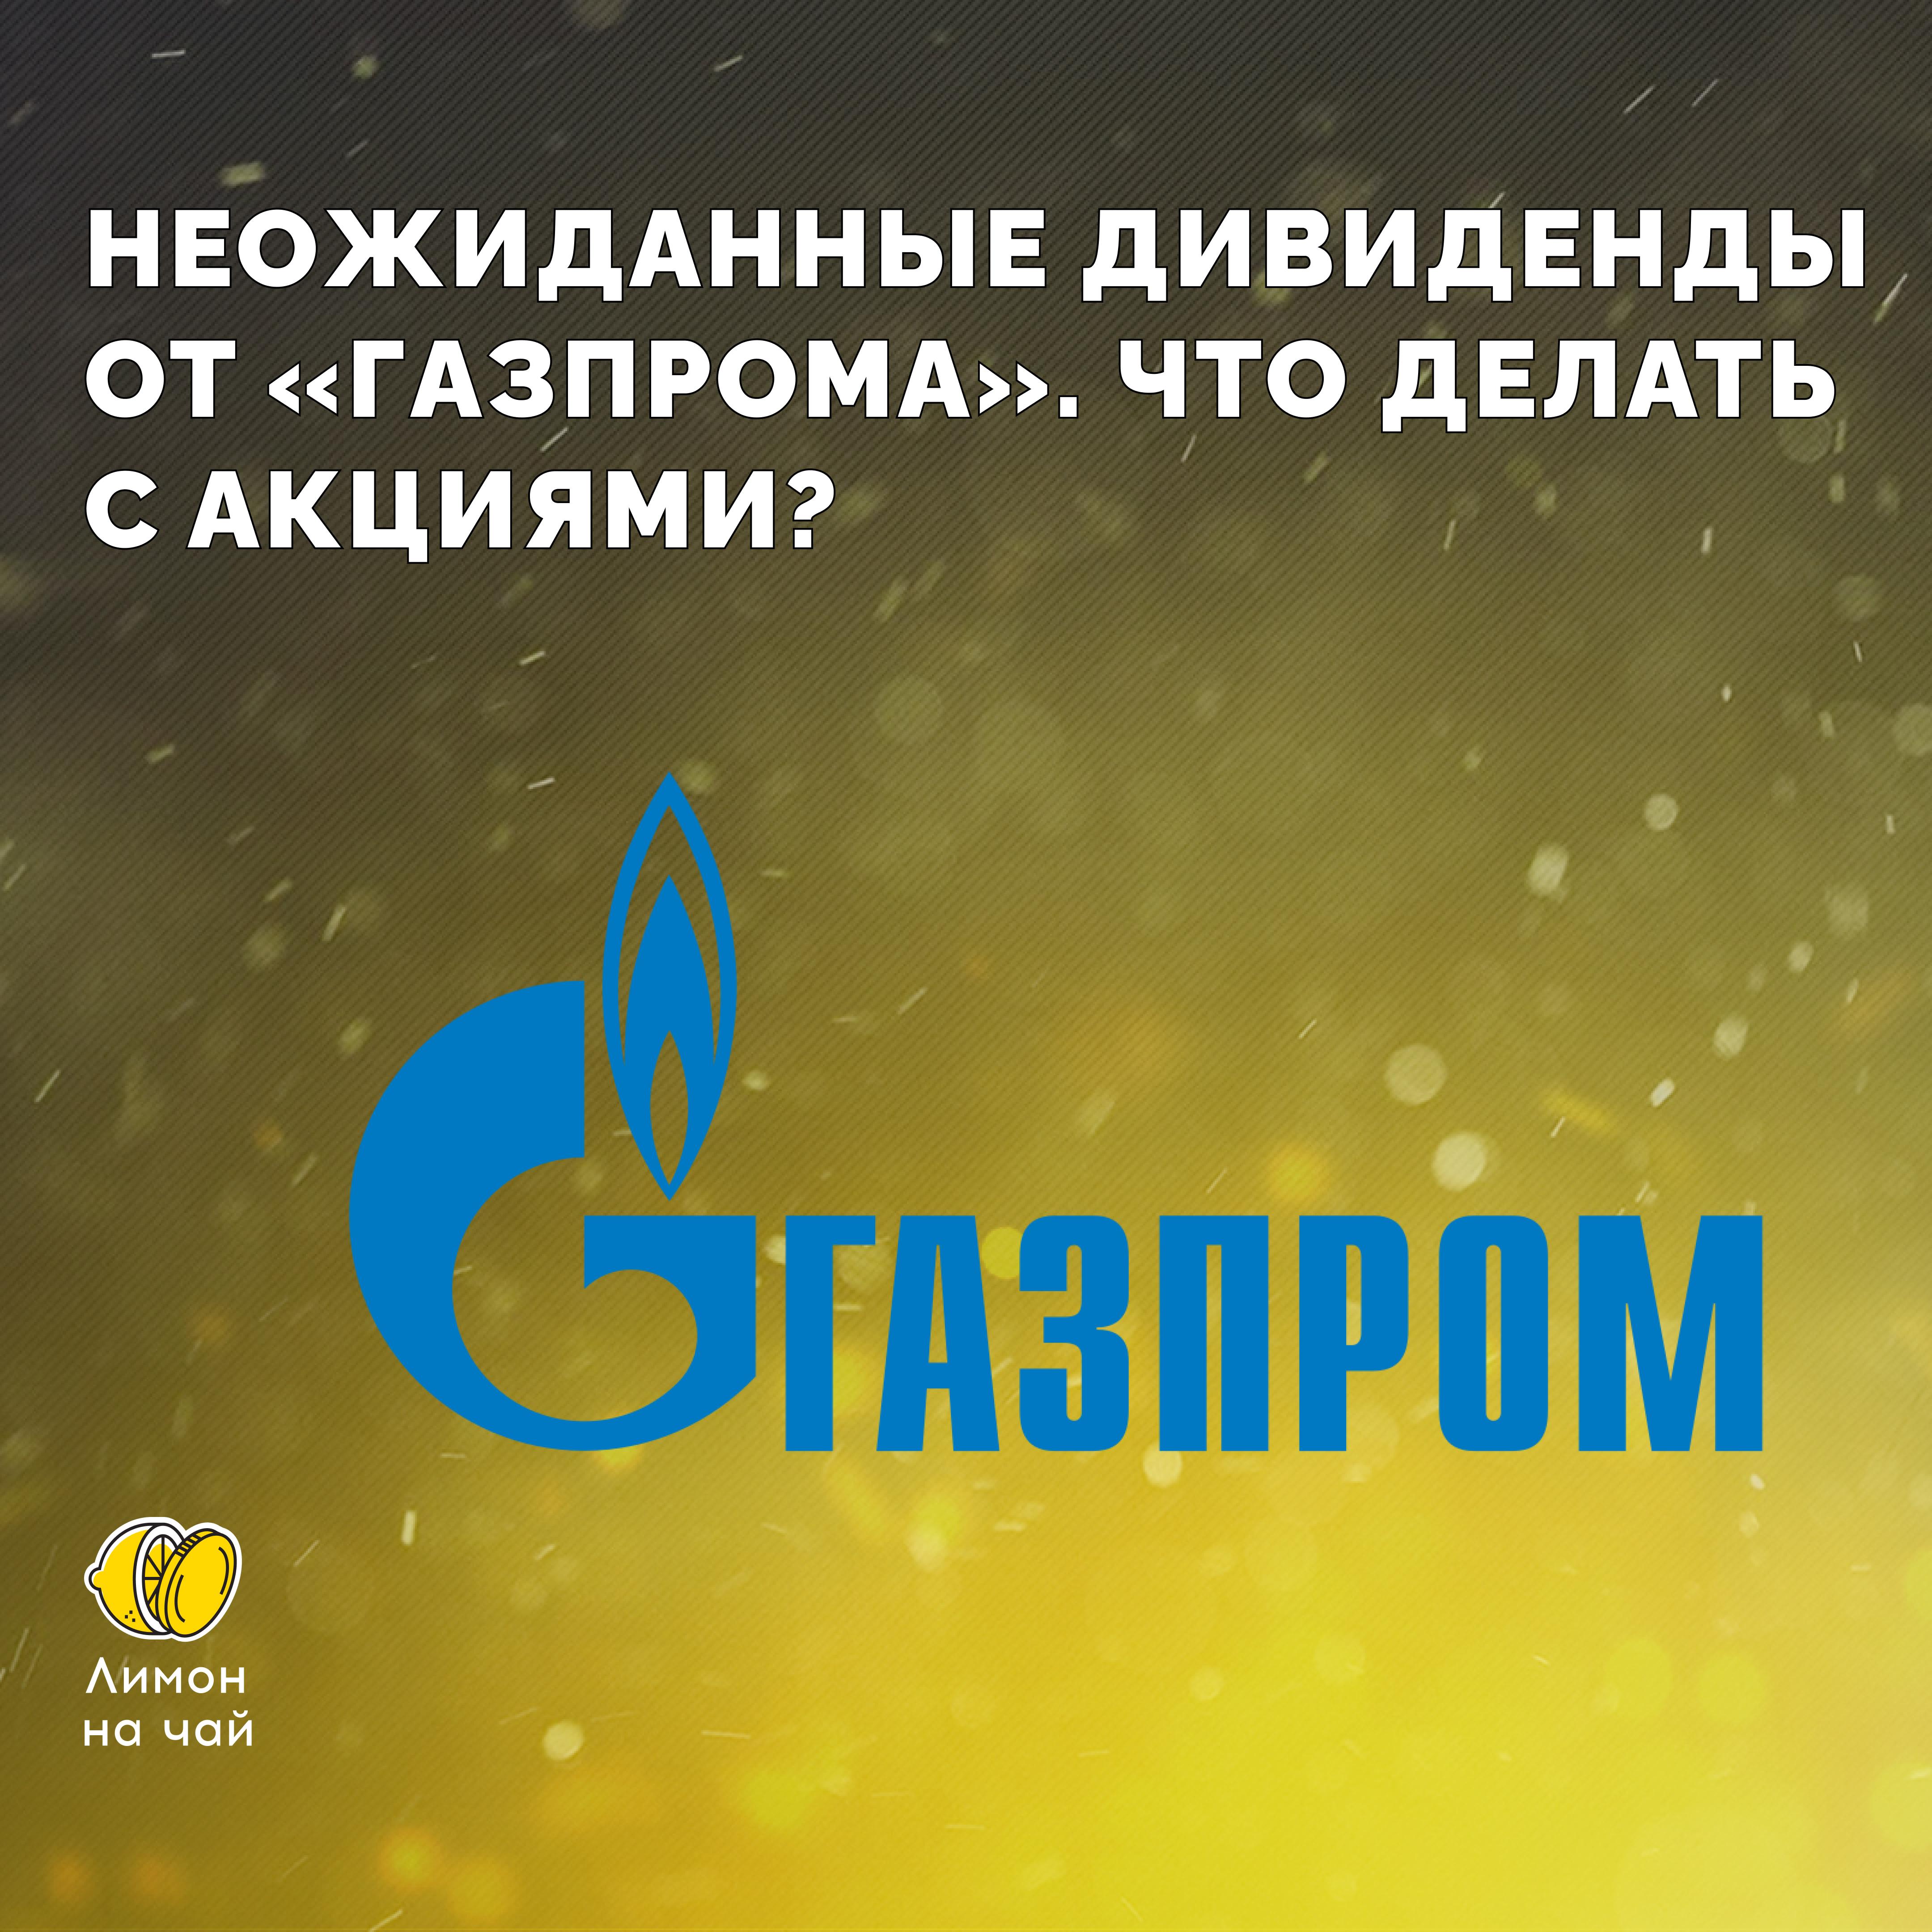 Что за дичь творится вокруг «Газпрома»: дивиденды, взлёт акций, сбои у брокеров